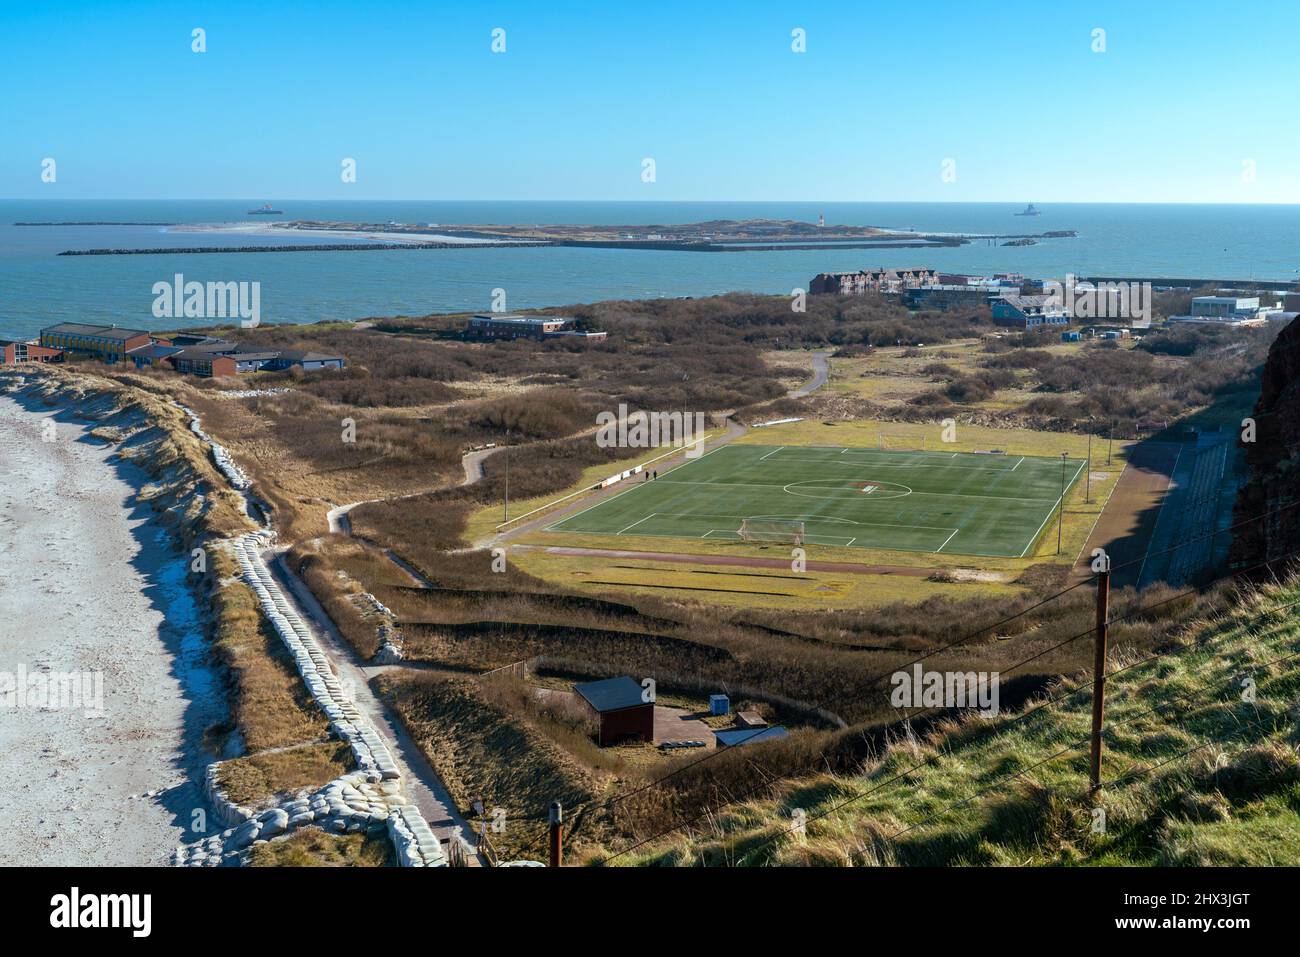 Fußballplatz auf der Insel Helgoland, Deutschland, mit der Insel Dune im Hintergrund an einem schönen sonnigen Wintertag. Stockfoto